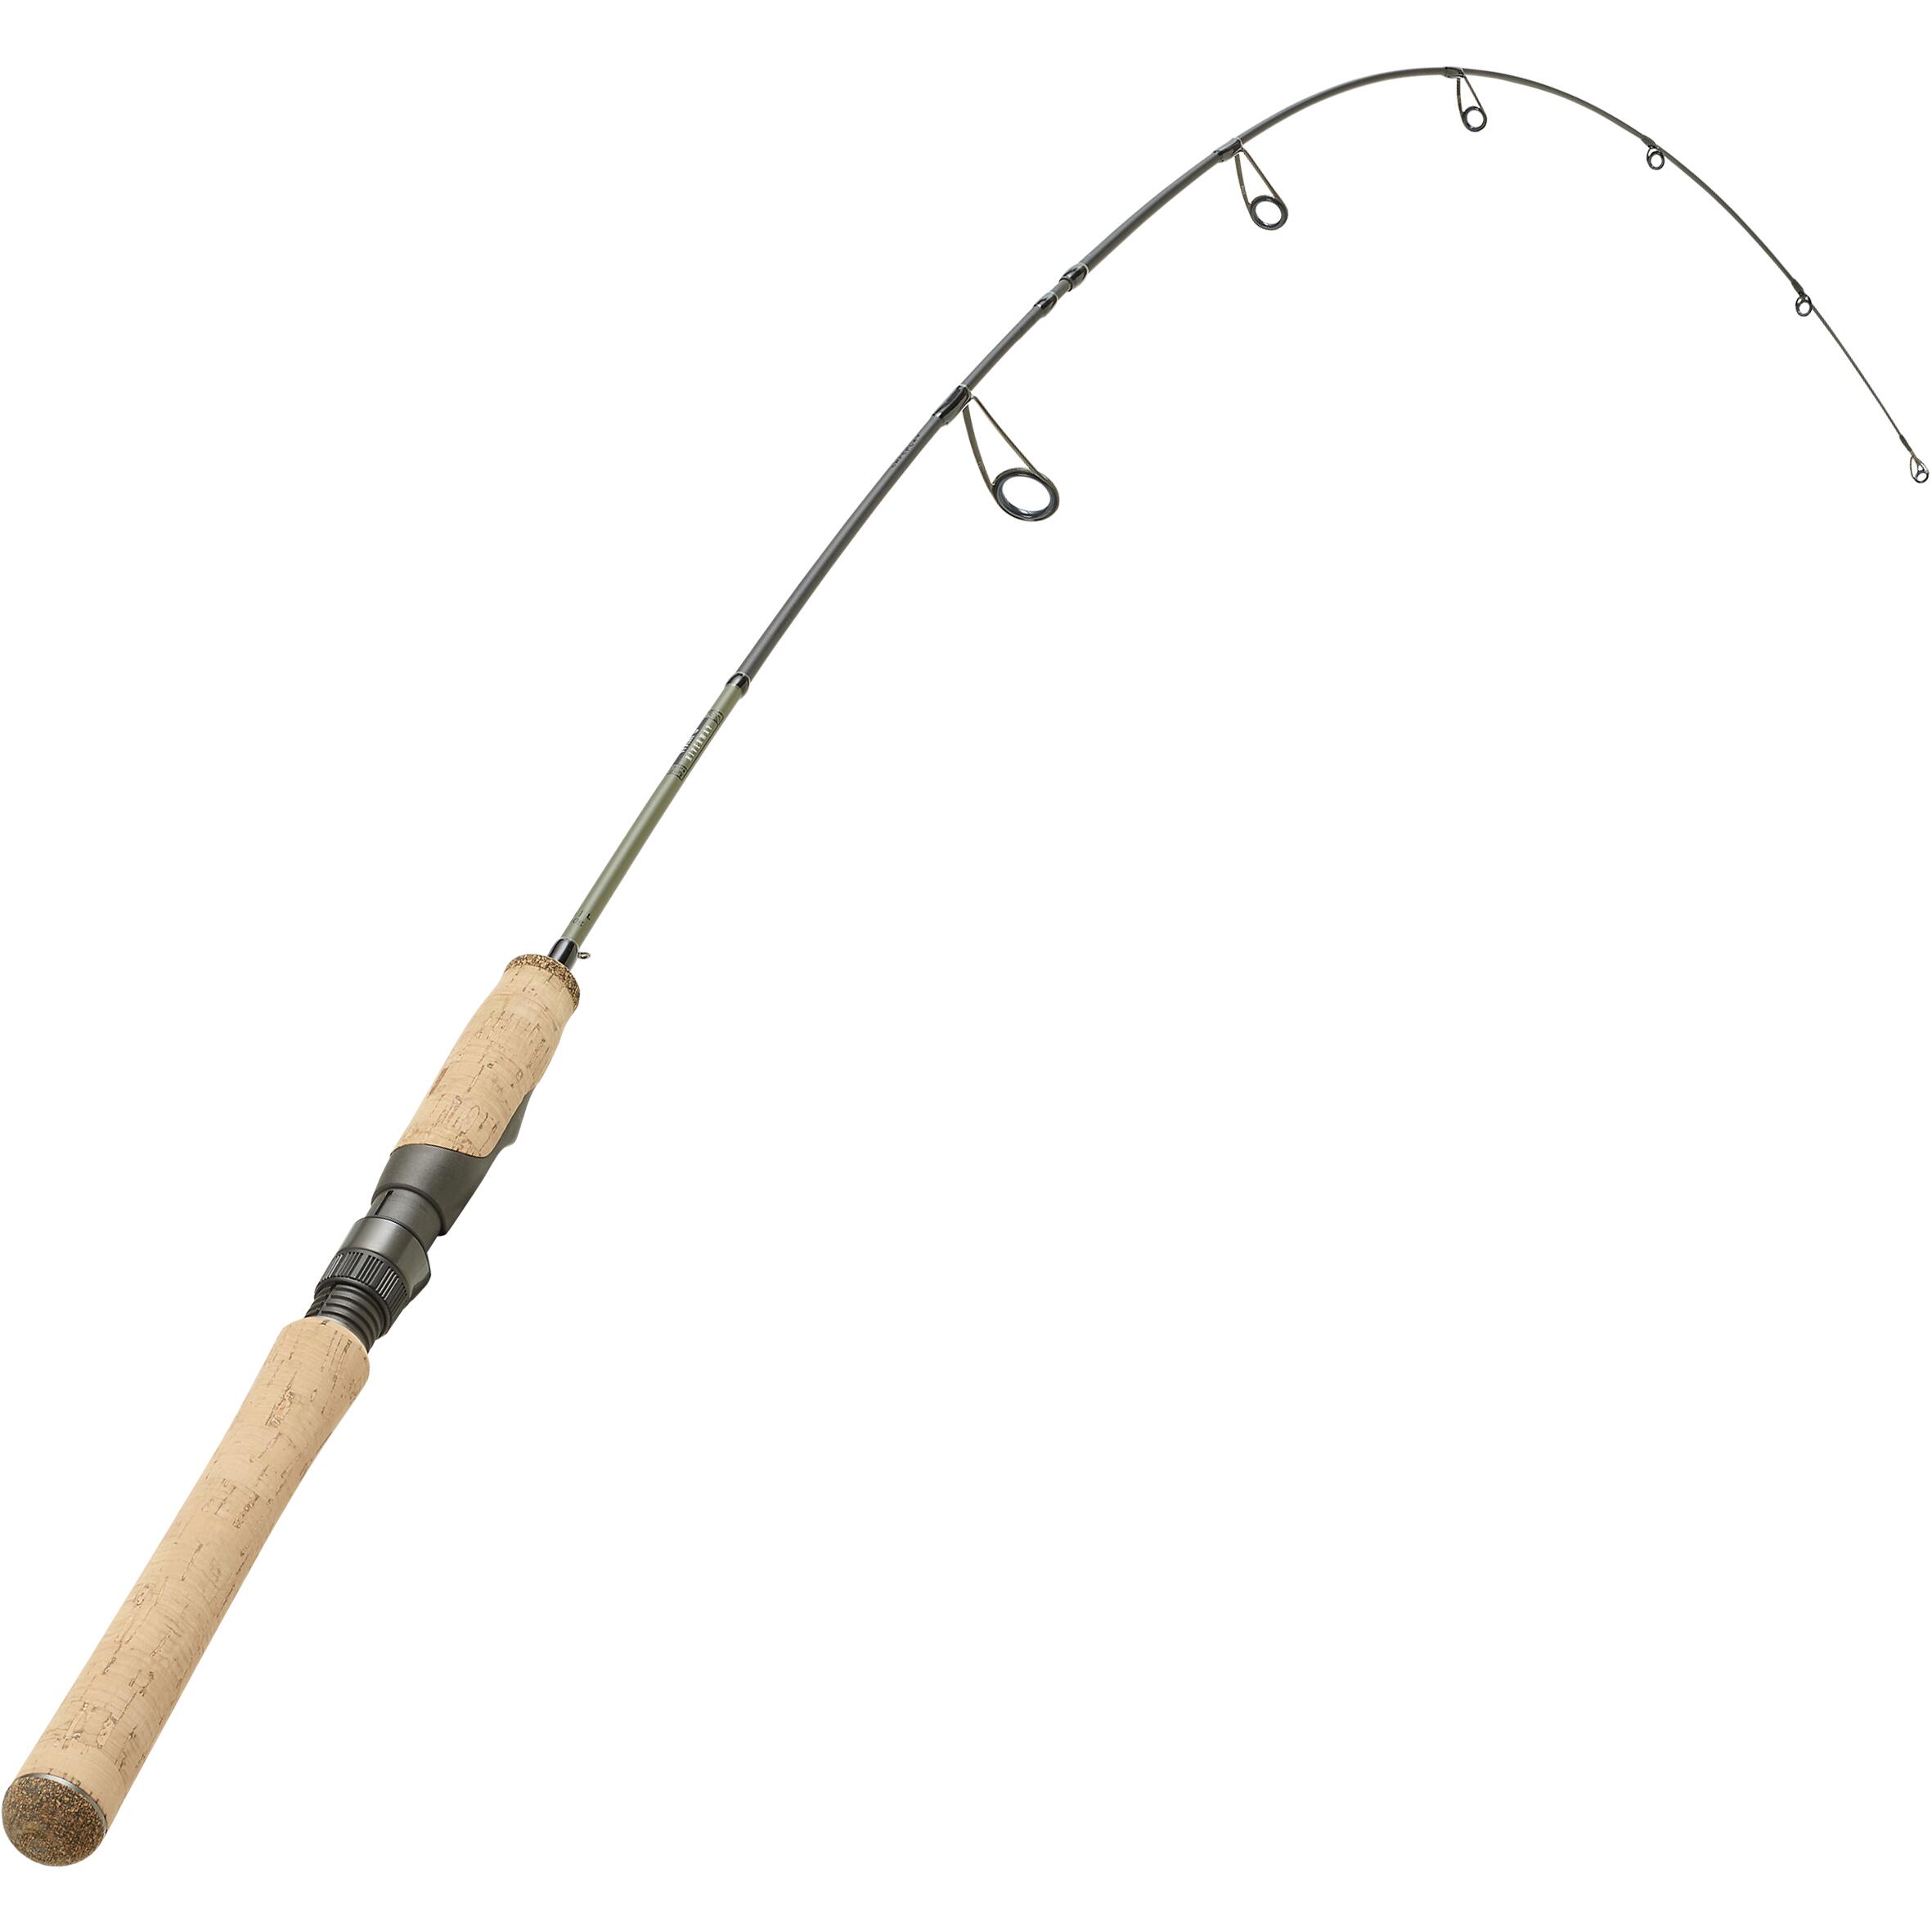 LURE FISHING ROD WXM-5 150L 2/11